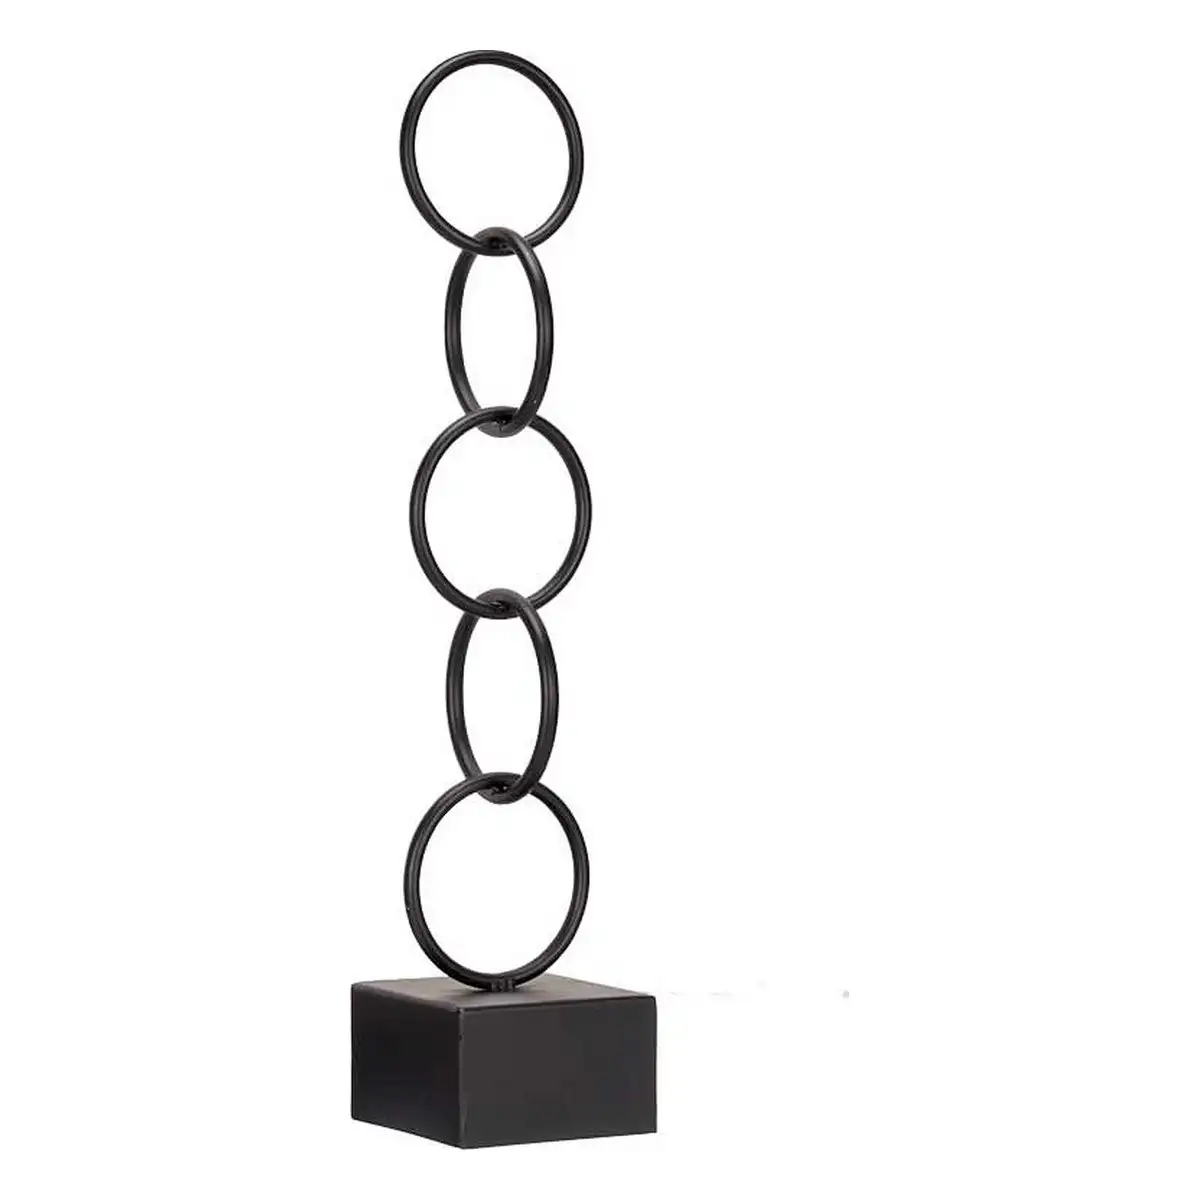 Figurine decorative anneaux noir metal 12 5 x 60 5 x 12 5 cm _5063. DIAYTAR SENEGAL - L'Art de Choisir, l'Art de Se Distinquer. Naviguez à travers notre catalogue et choisissez des produits qui ajoutent une note d'élégance à votre style unique.